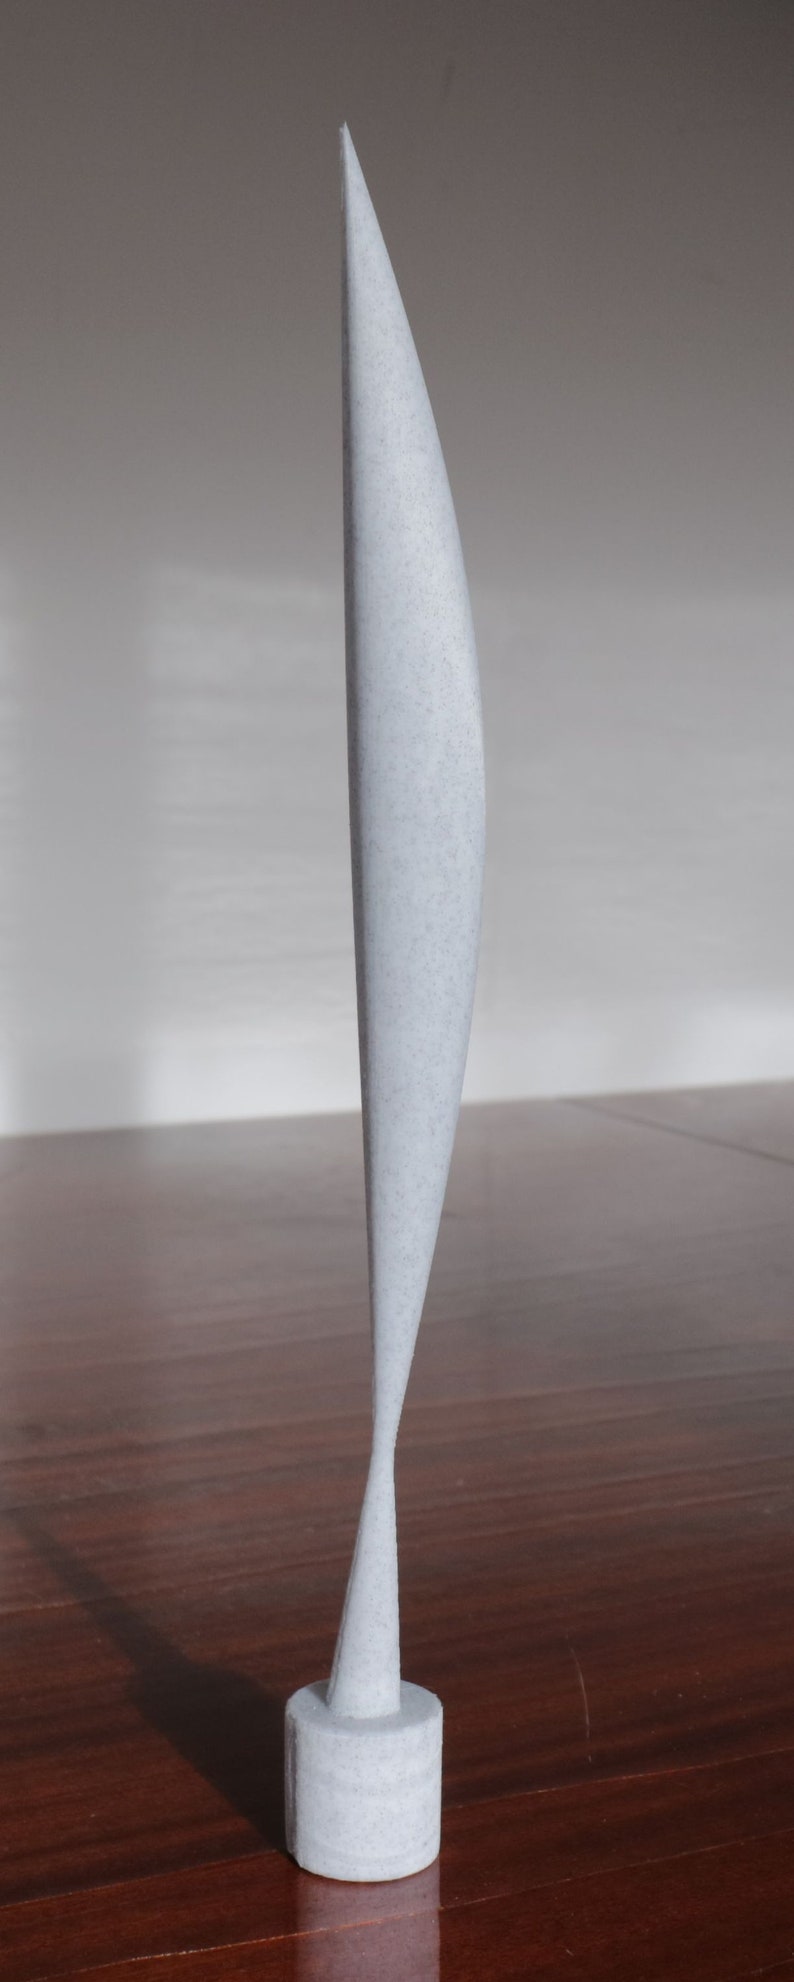 3D-gedruckte Reproduktion der Bird in Space-Skulptur von Constantin Brancusi Gray marble